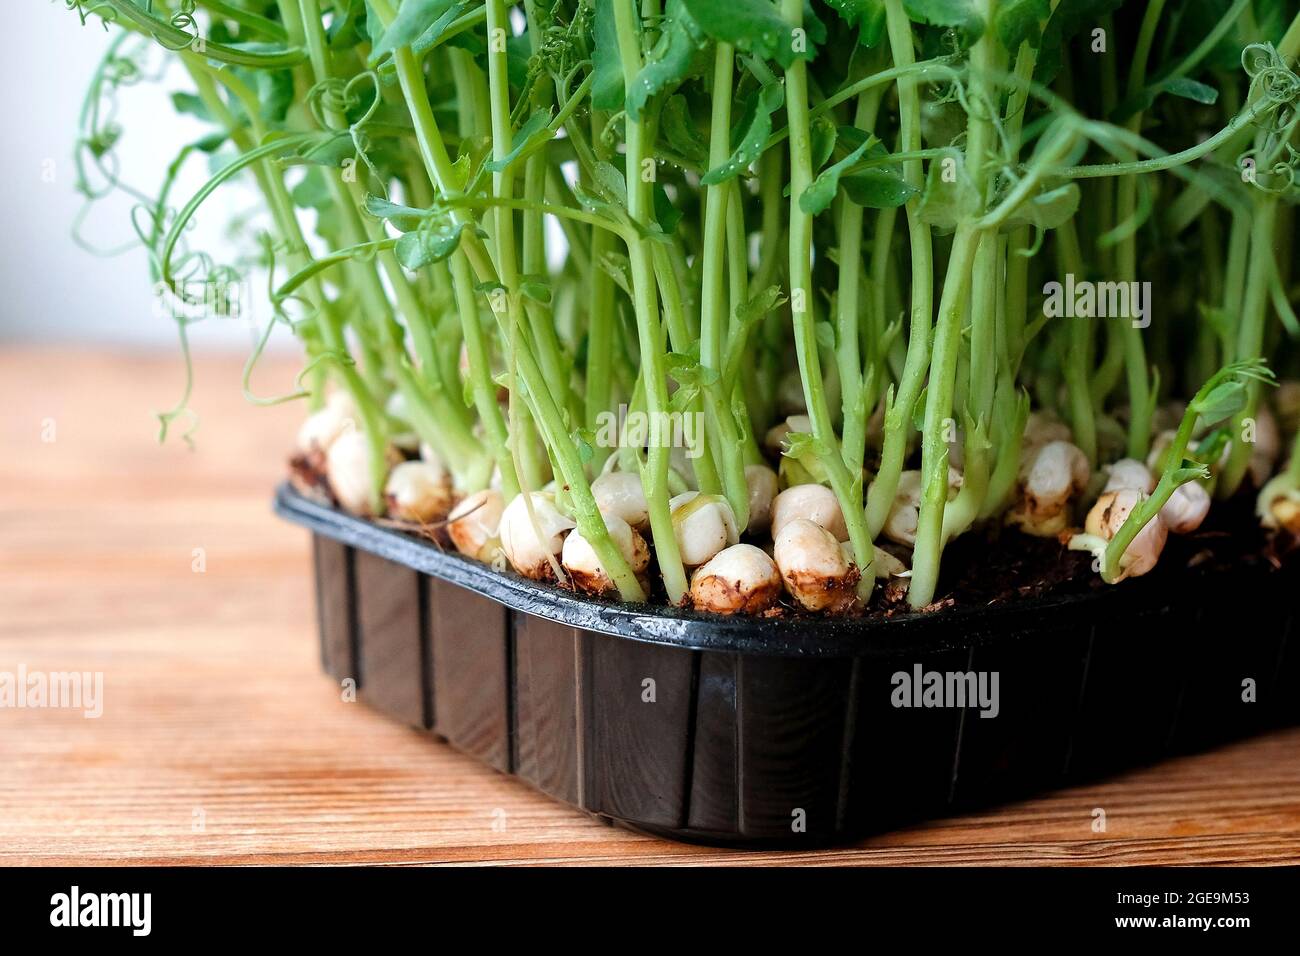 Junge Keimlinge aus Erbsen in einem schwarzen Behälter. Gemüse zu Hause anbauen. Stockfoto